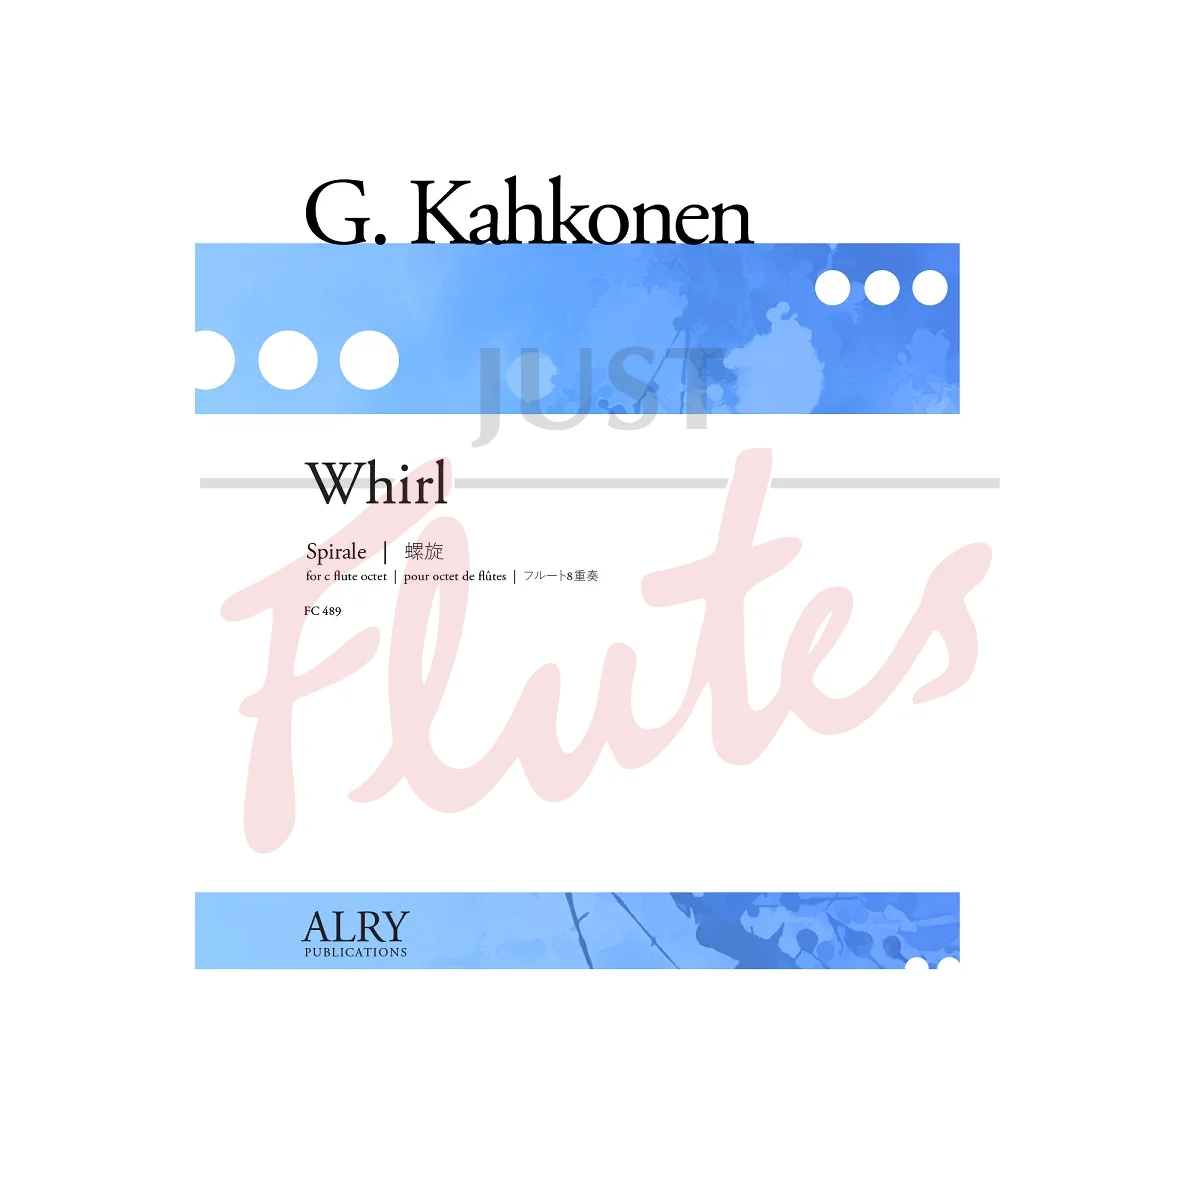 Whirl for Flute Octet